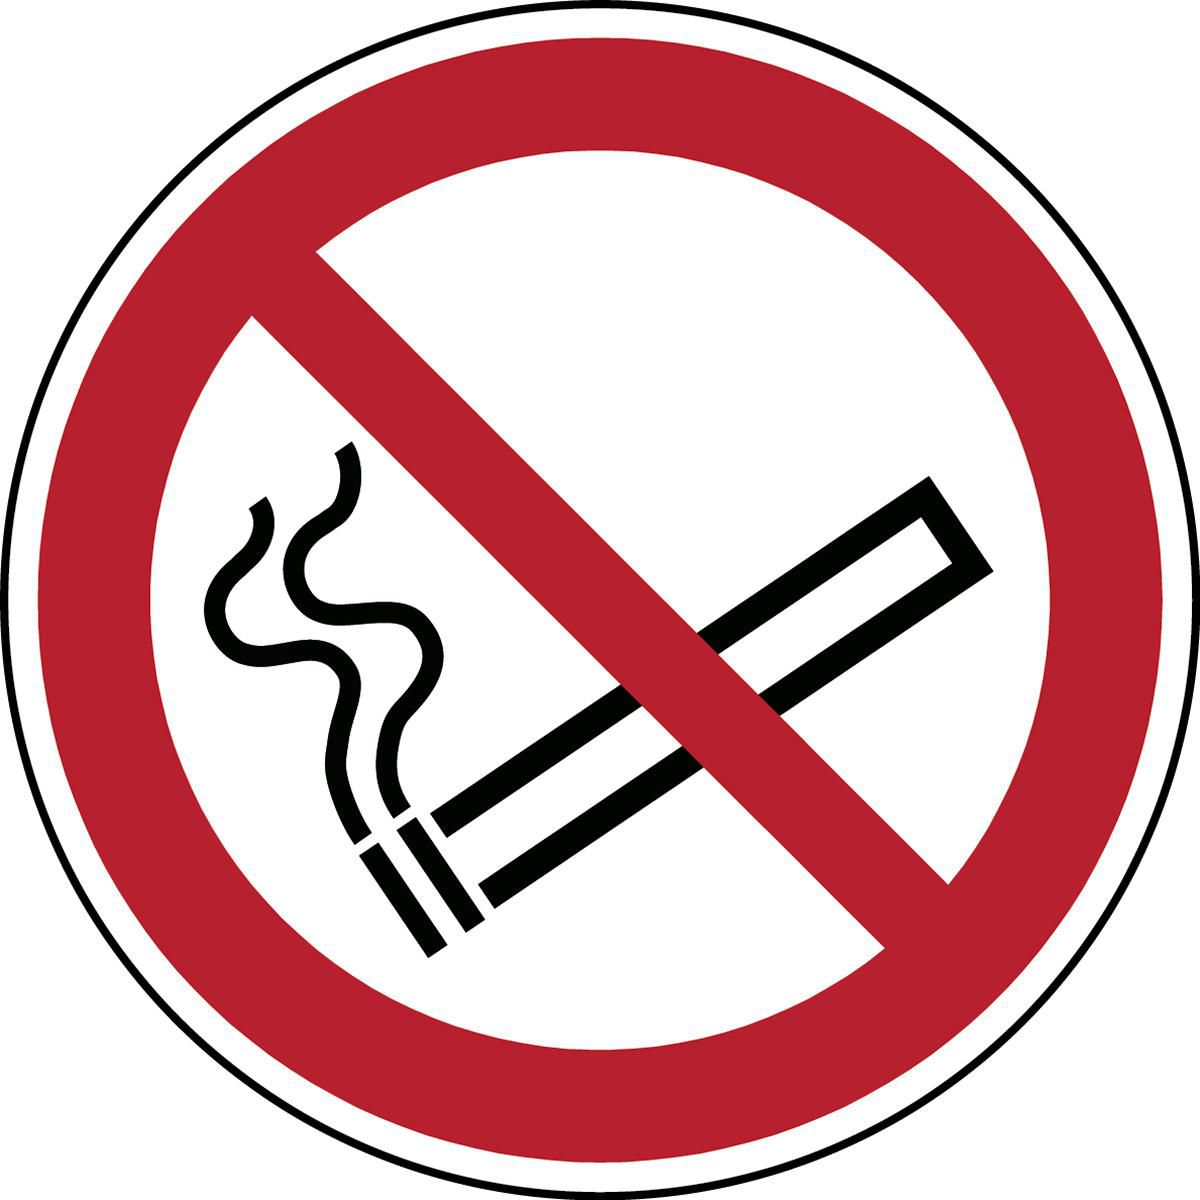 BRADY ISO-Sicherheitsschild - Rauchen verboten, Rund, Schwarz/rot auf weiss, Polyester, 1Stück (PIC